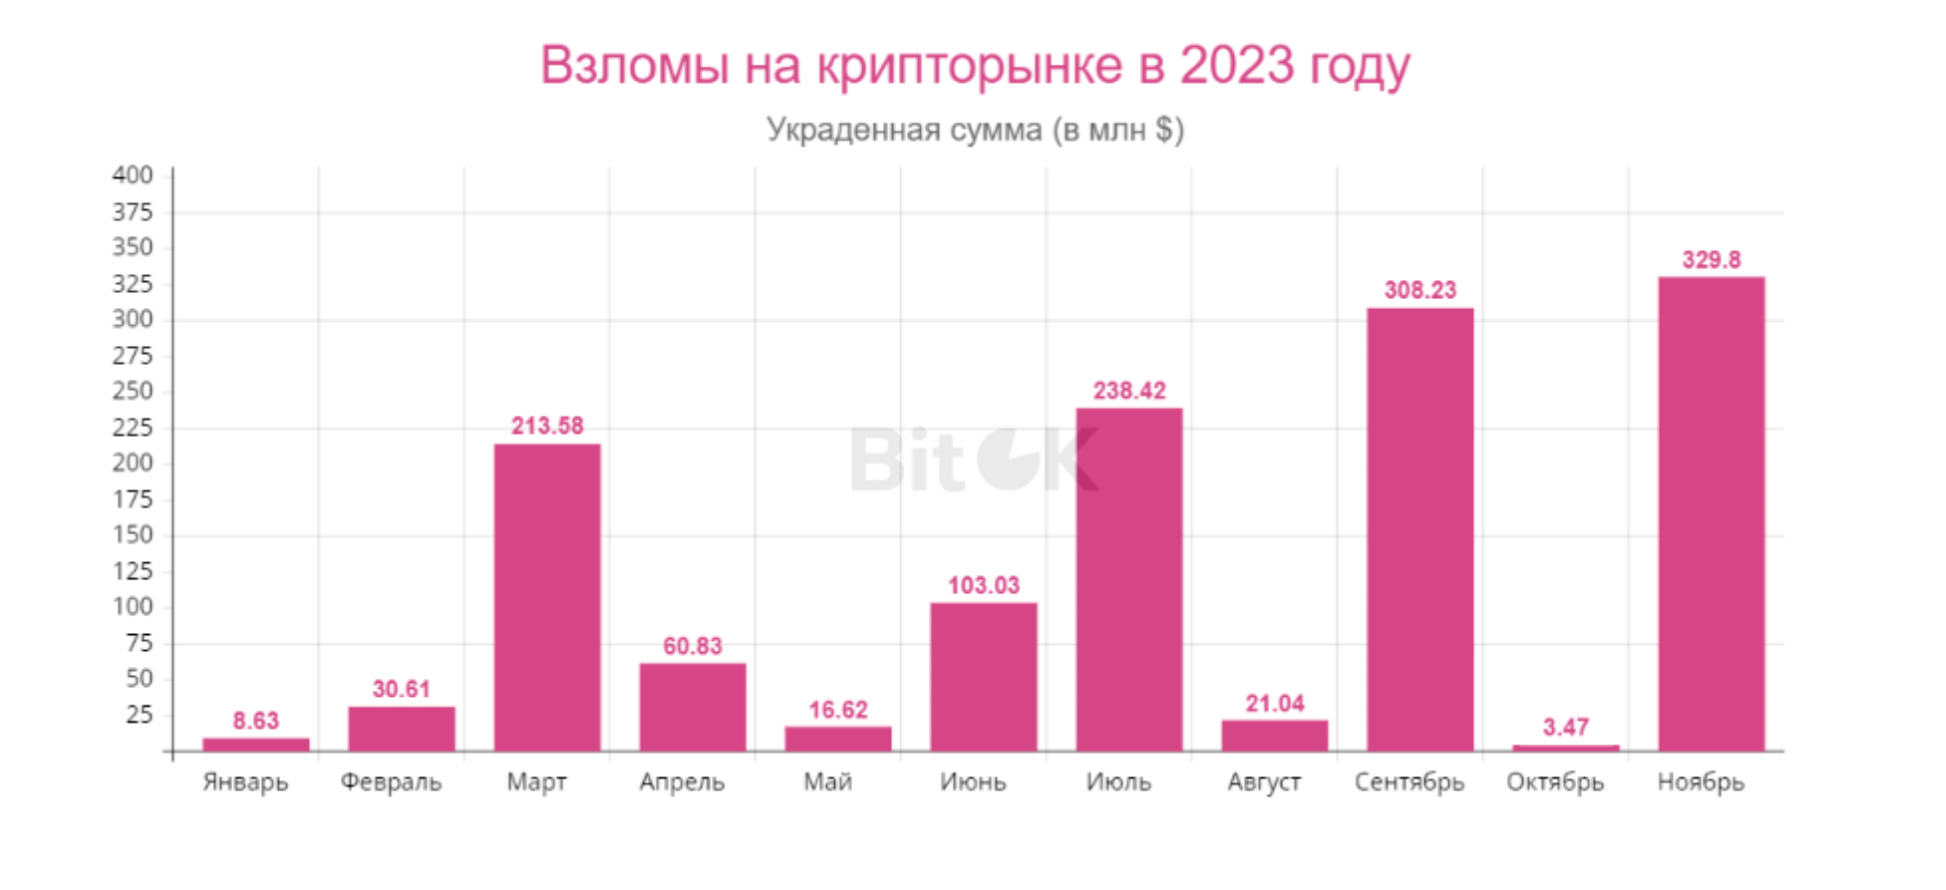 Объем украденных криптовалютных активов в 2023 году. Источник: BitOK